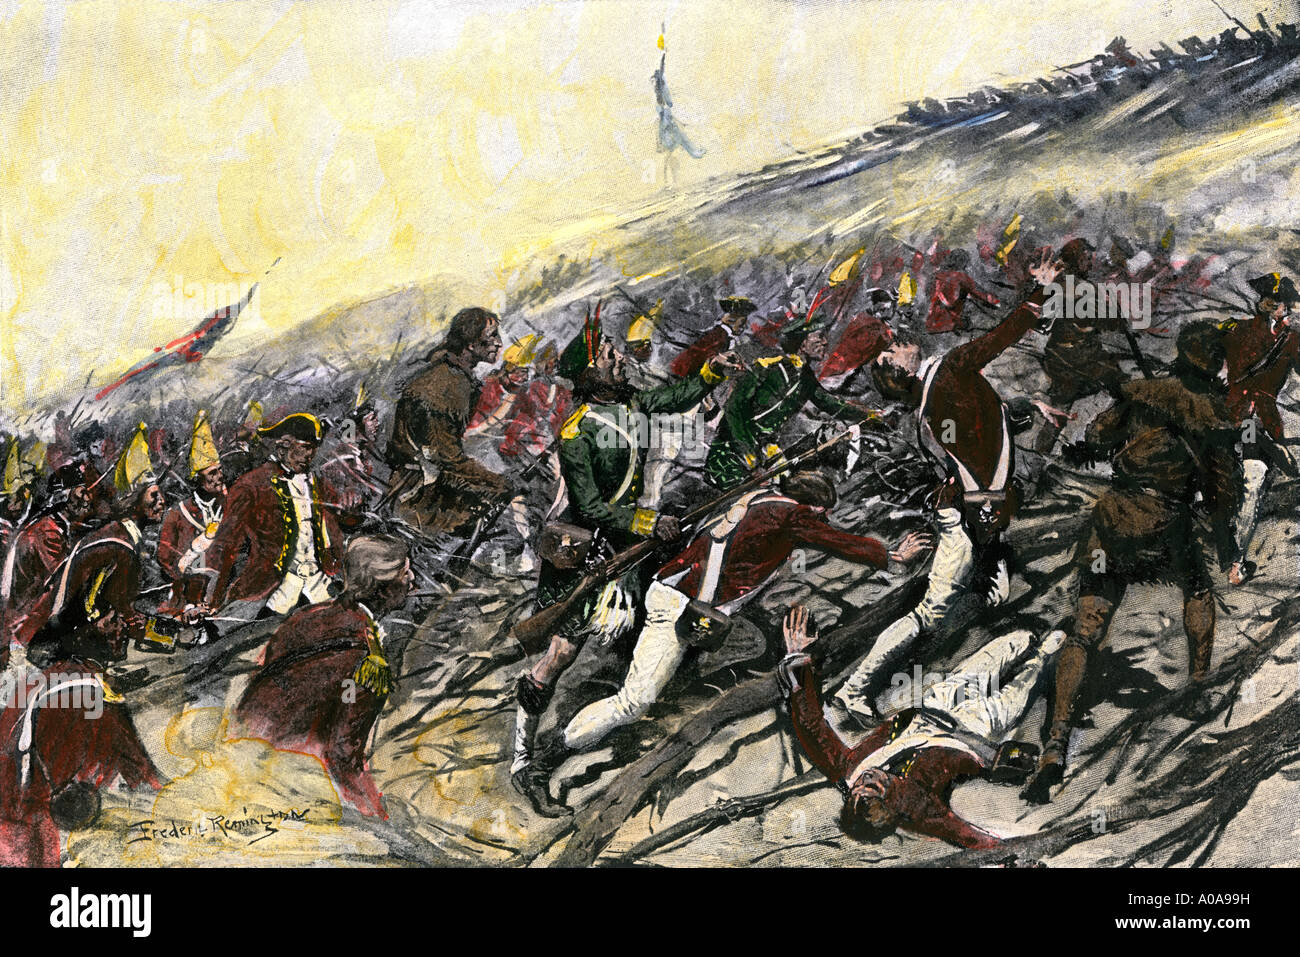 Jeffrey Amherst führende britische Truppen unter Fort Ticonderoga in der Franzosen- und Indianerkrieg 1759. Handcolorierte halftone einer Abbildung Stockfoto